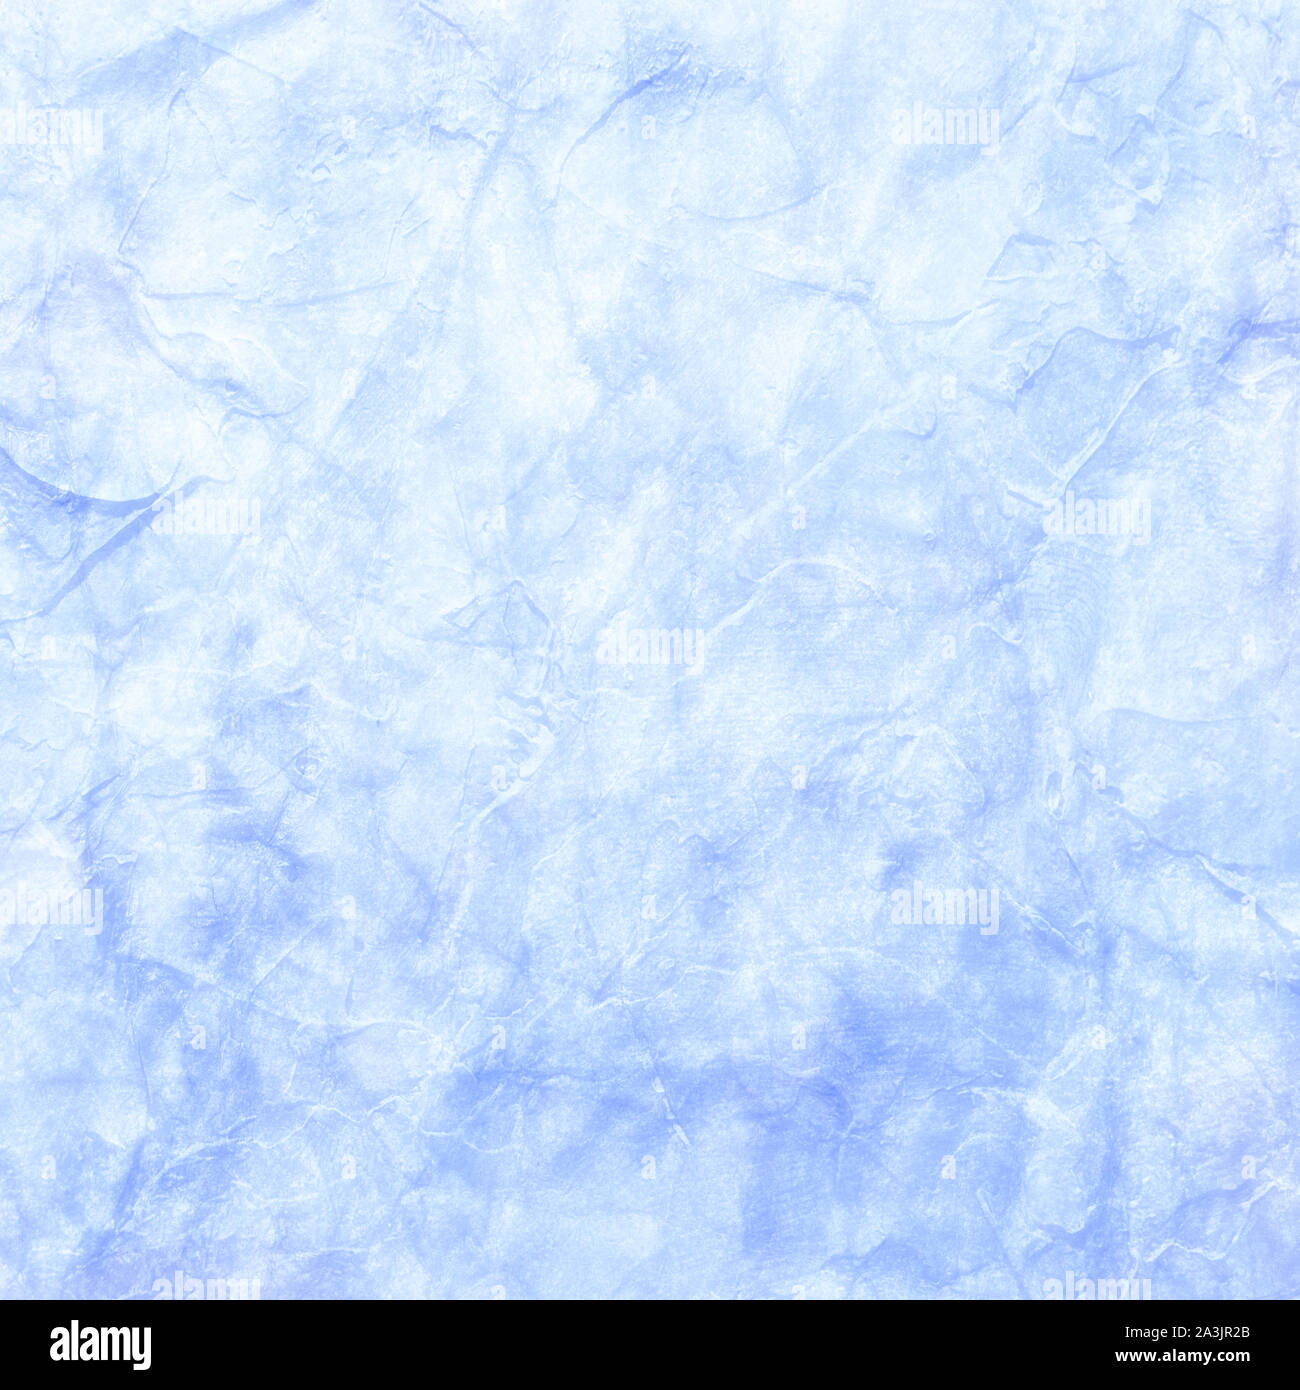 Luce di sfondo blu con marmo di colore bianco e la vecchia distressed parete di roccia e carta sgualcita texture, pastello vintage design Foto Stock